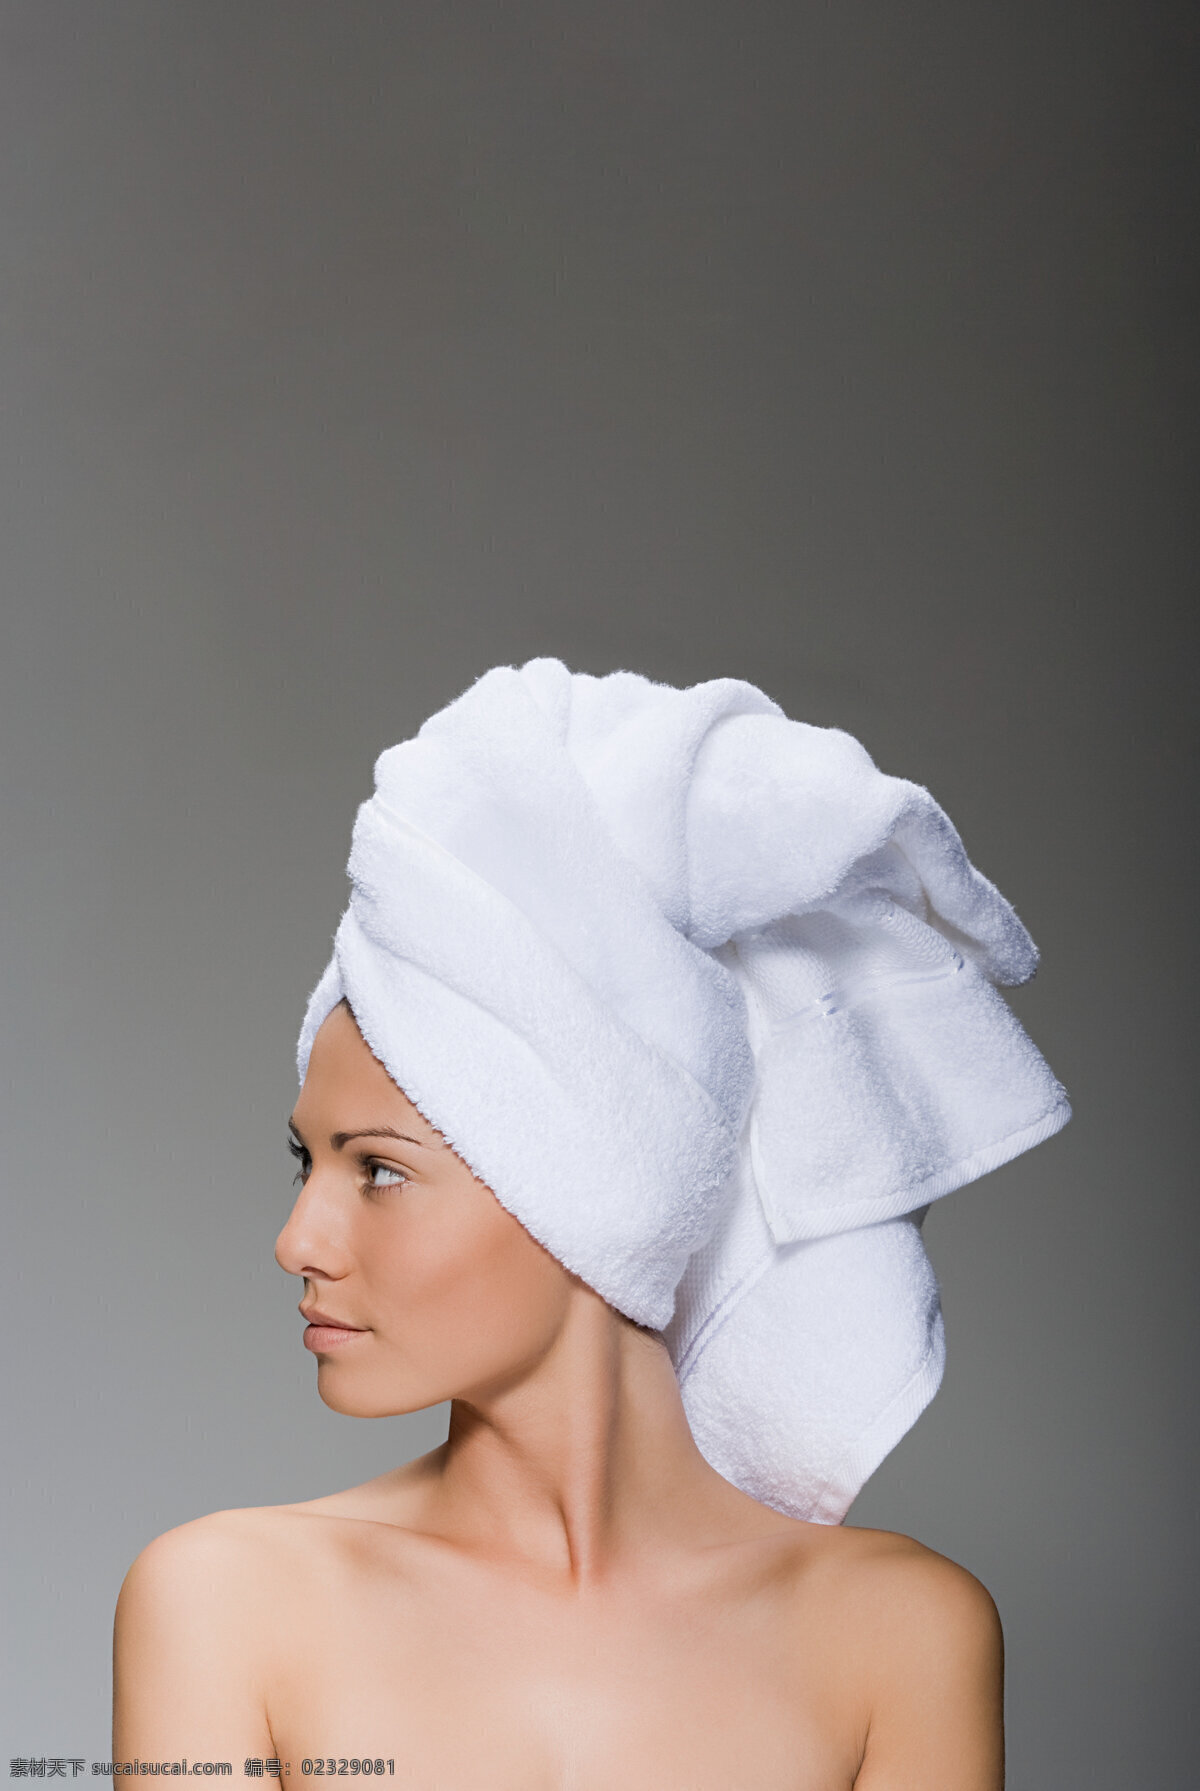 欧美 模特 魅力 造型 白色 头巾 毛巾 浴巾 裸体 秀发 美发 发型 个性 时尚 潮流 长发 头发 美女 女性 女人 性感 海报 广告 高清图片 美女图片 人物图片